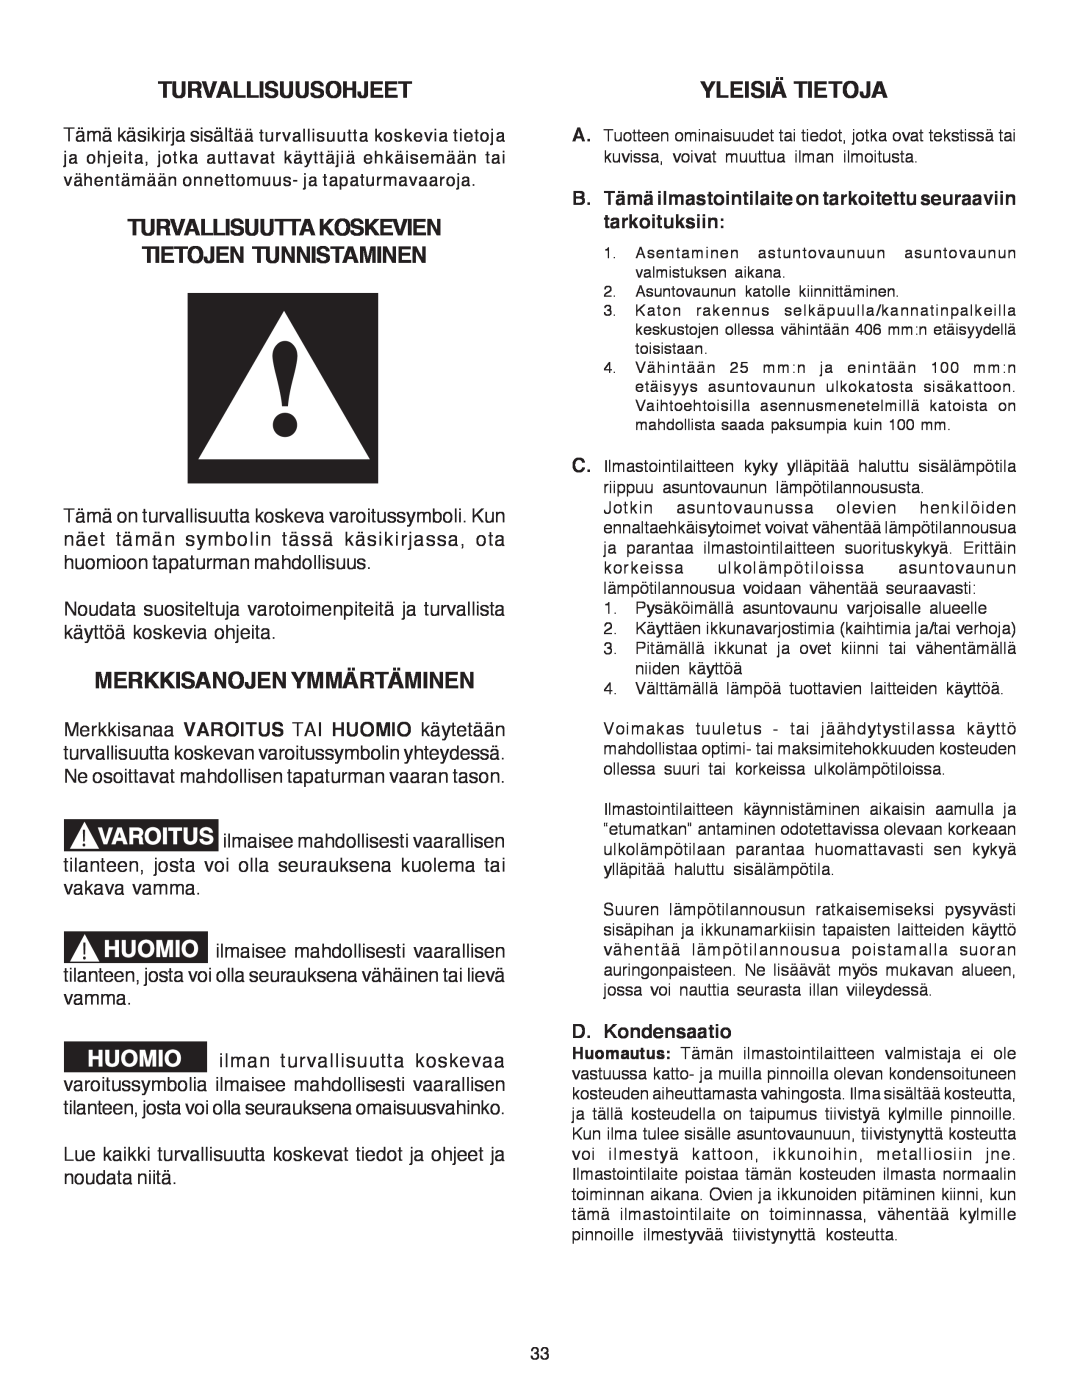 Dometic B3200 manual Turvallisuusohjeet, Turvallisuuttakoskevien Tietojen Tunnistaminen, Merkkisanojen Ymmärtäminen 